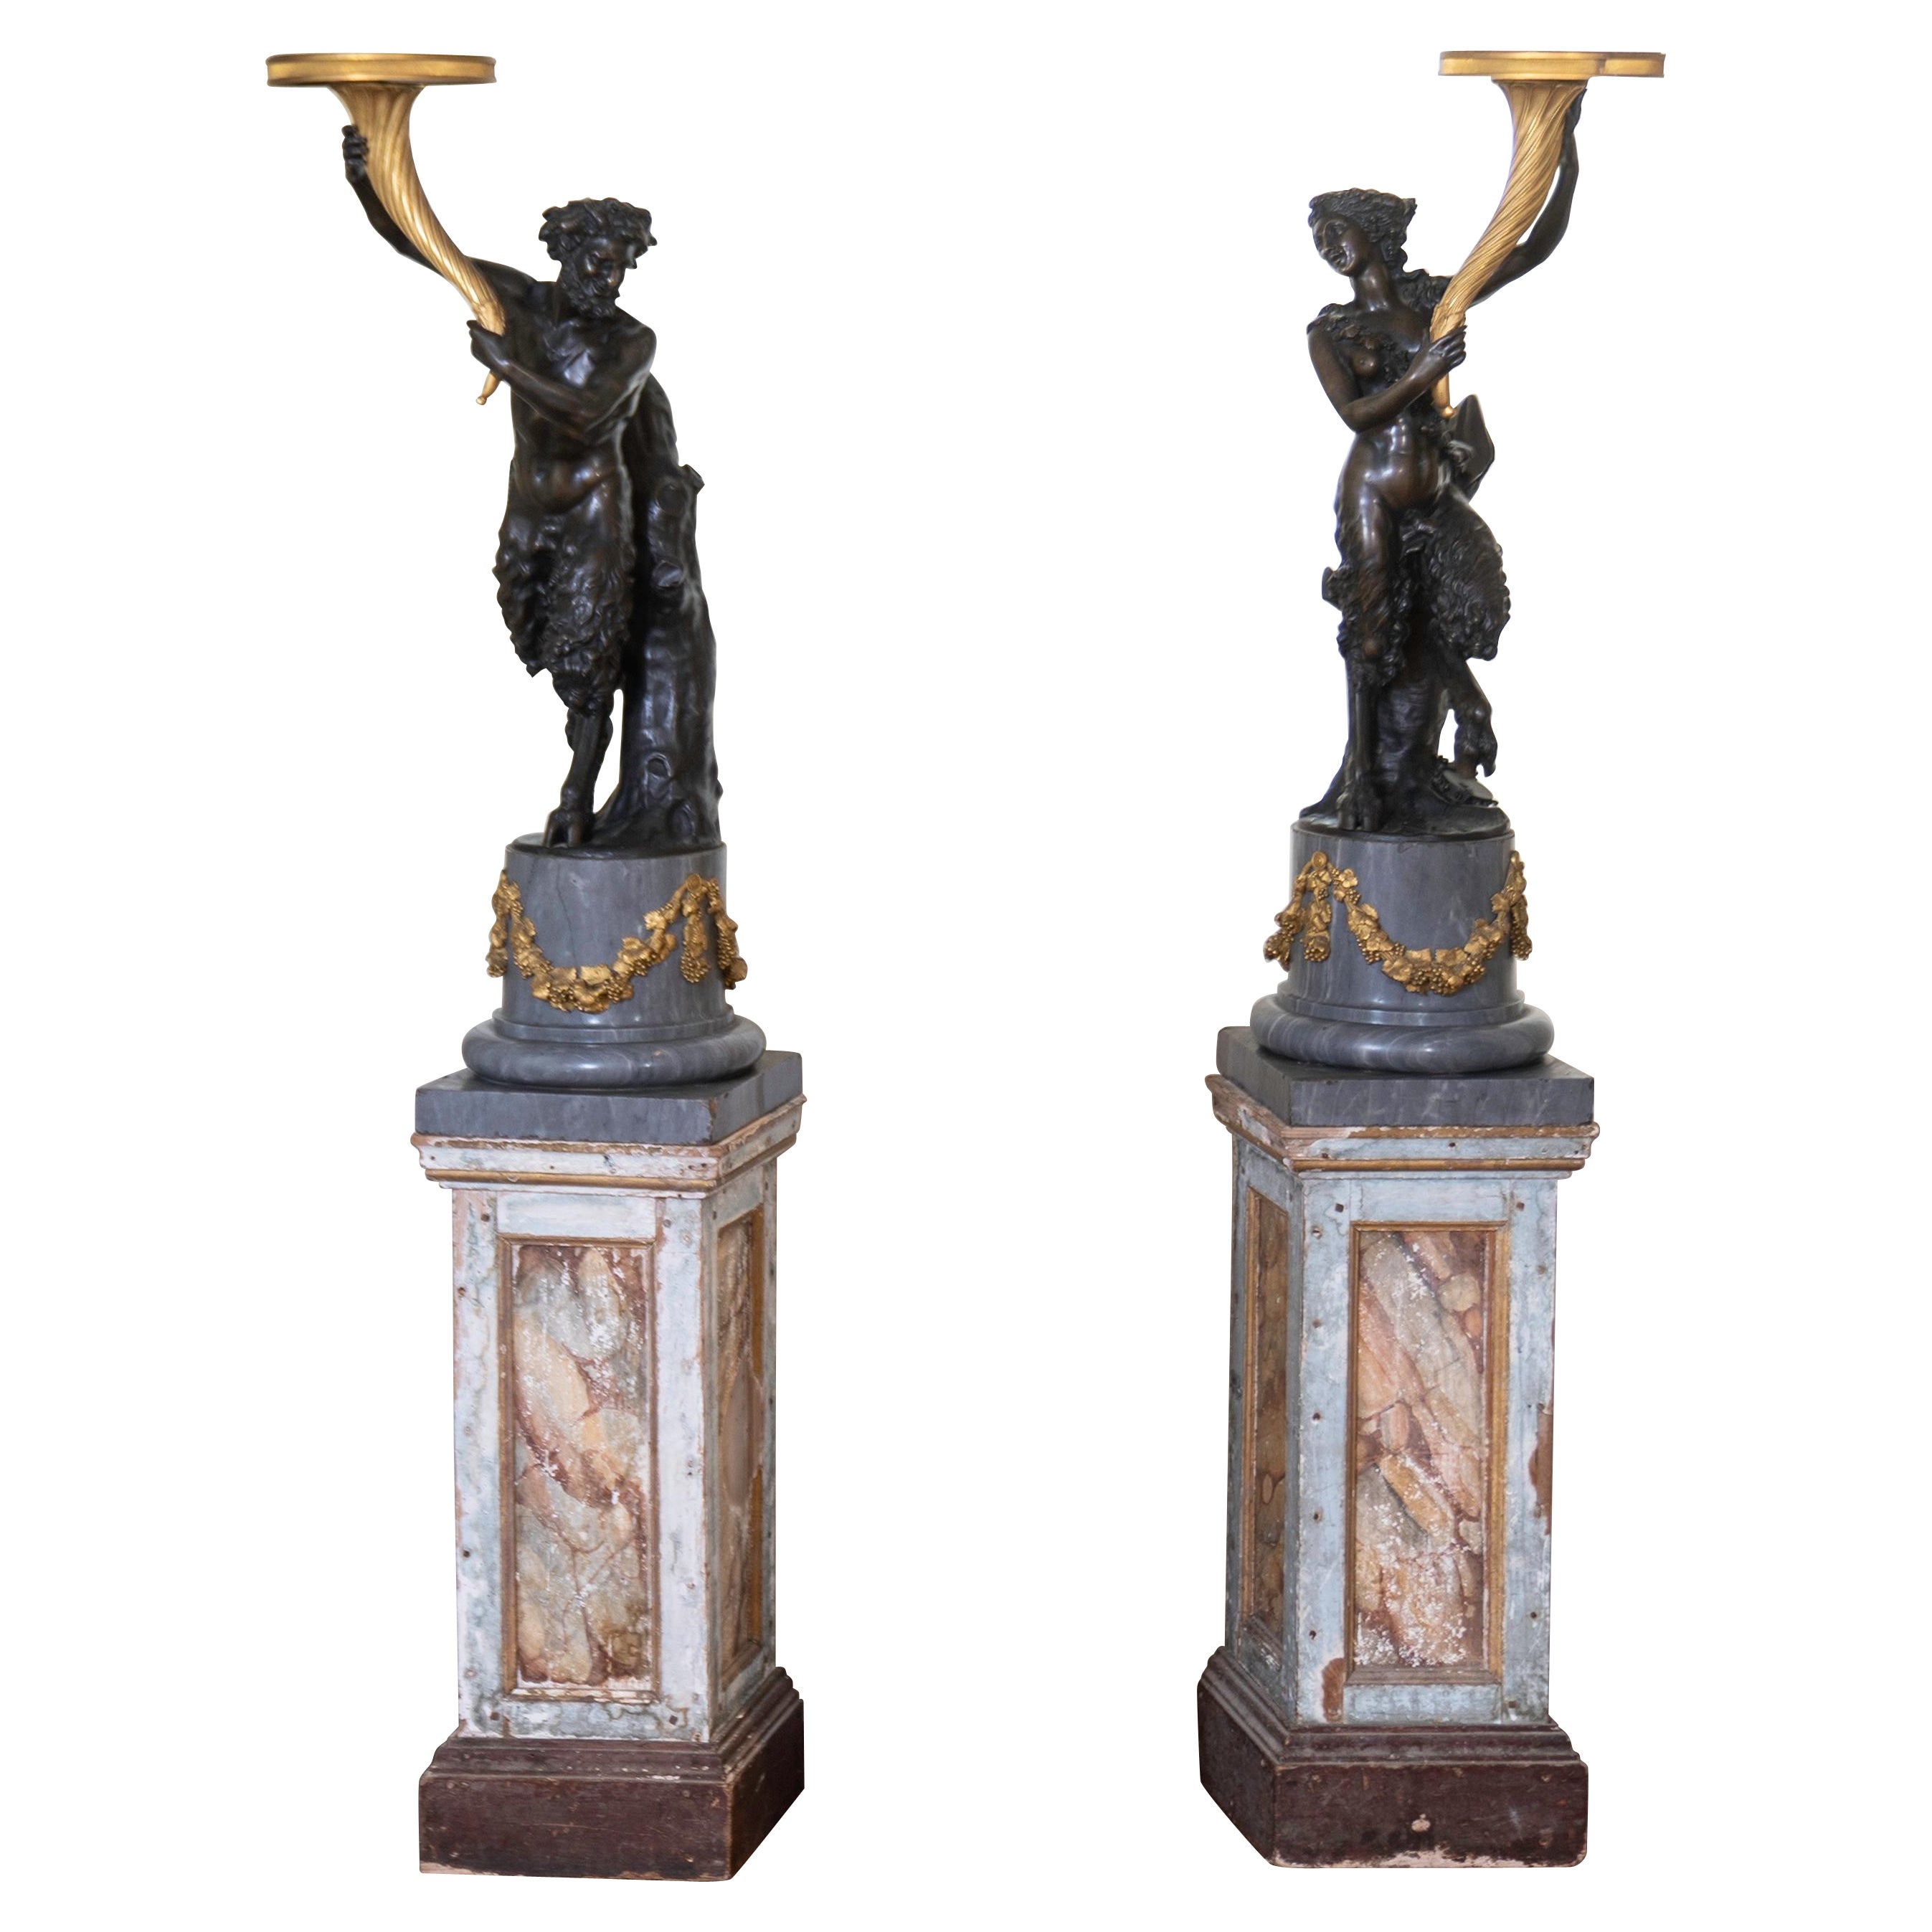 Paire de statues de satyres en bronze du XVIIIe siècle, signées Clodion